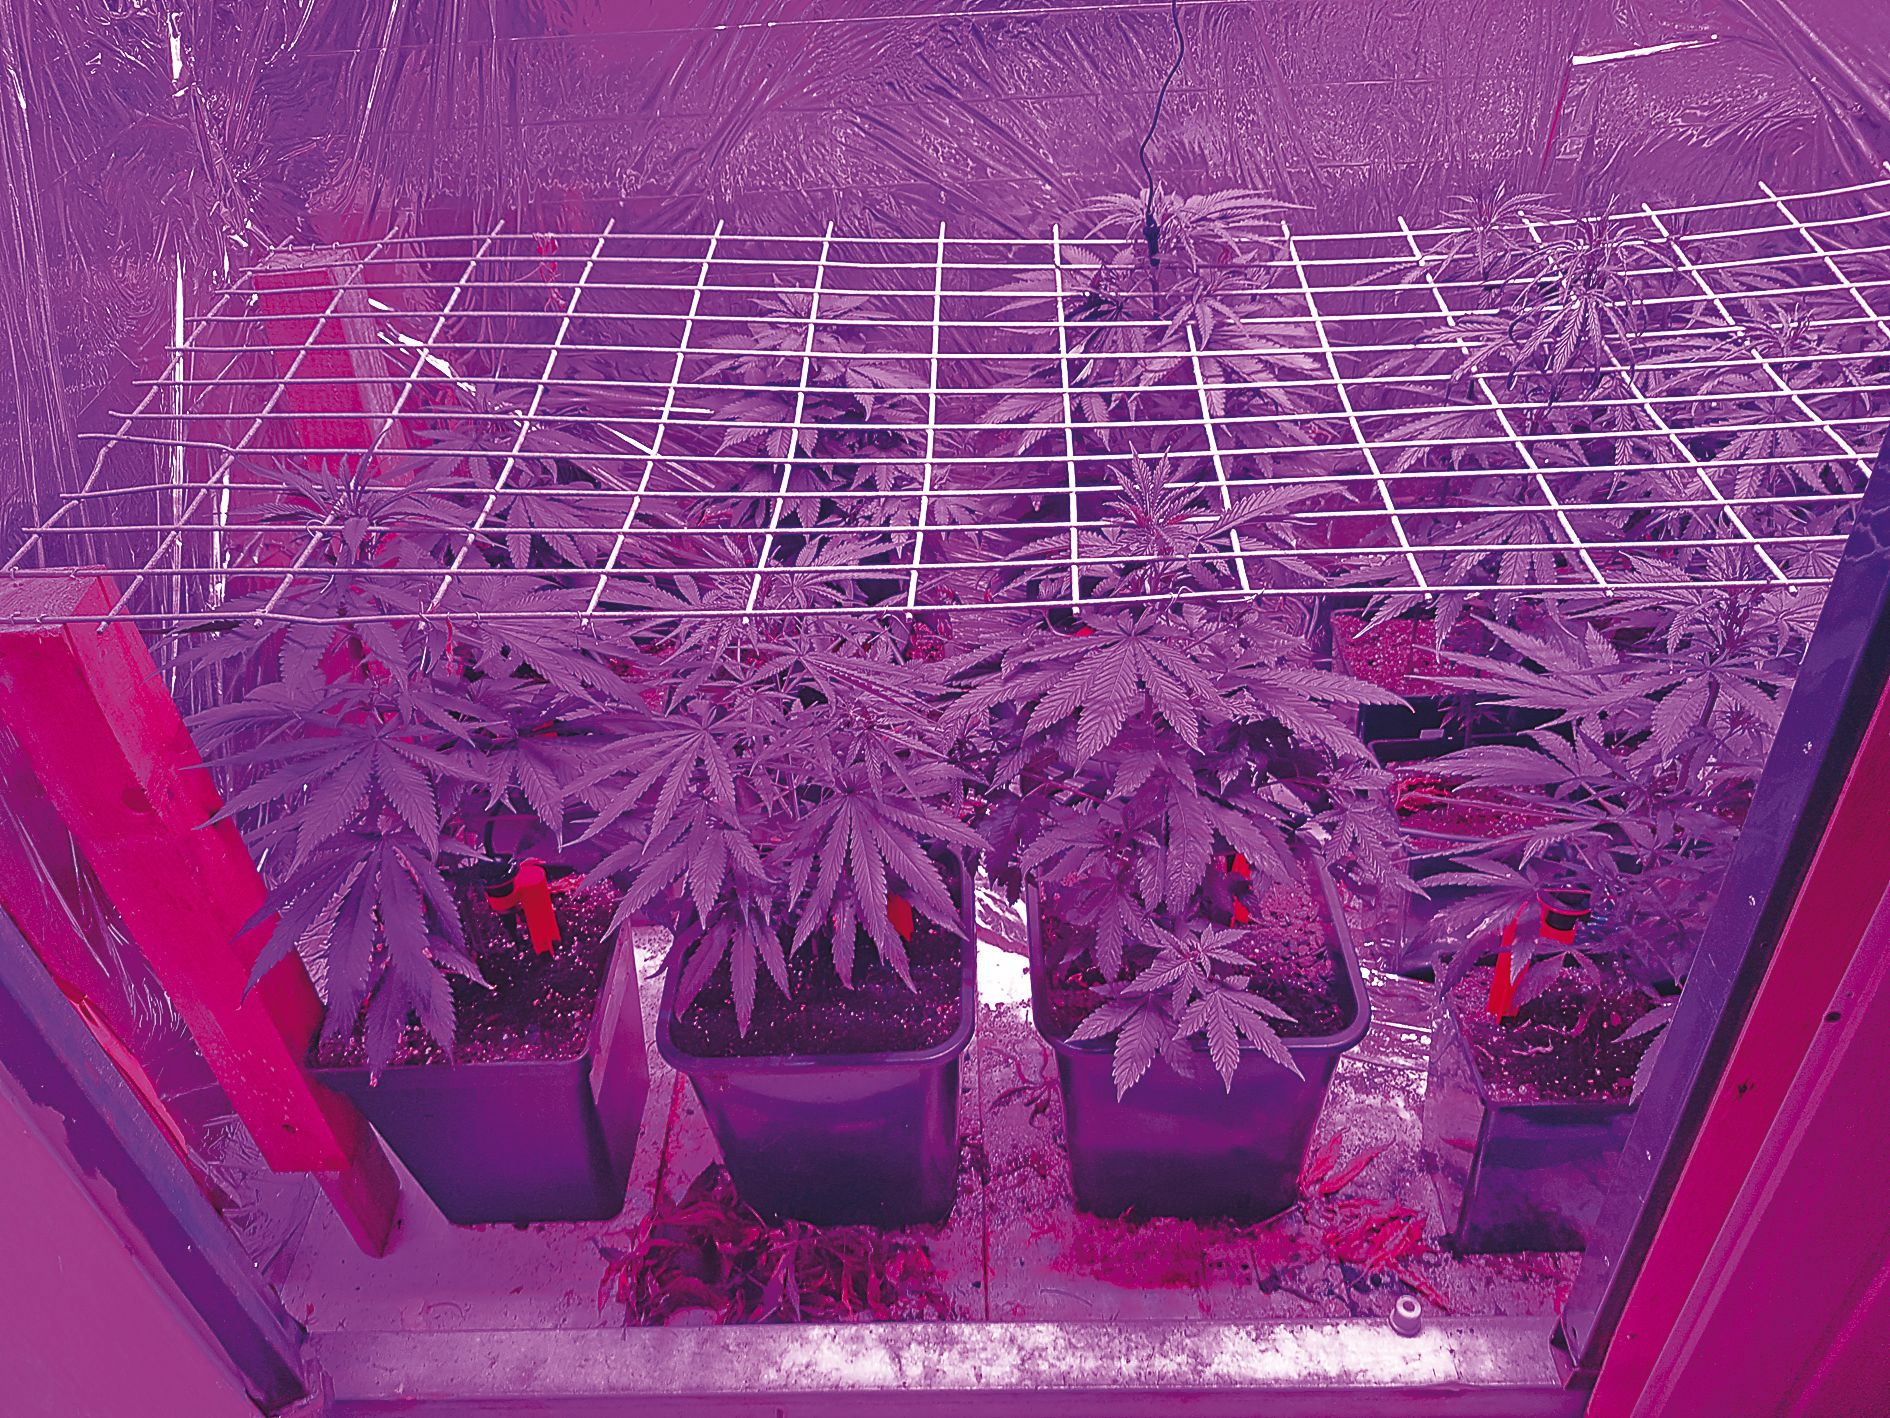 Le cannabis était planté dans un engrais de bonne qualité, arrosé régulièrement par un système automatique et éclairé par des lampes à UV.